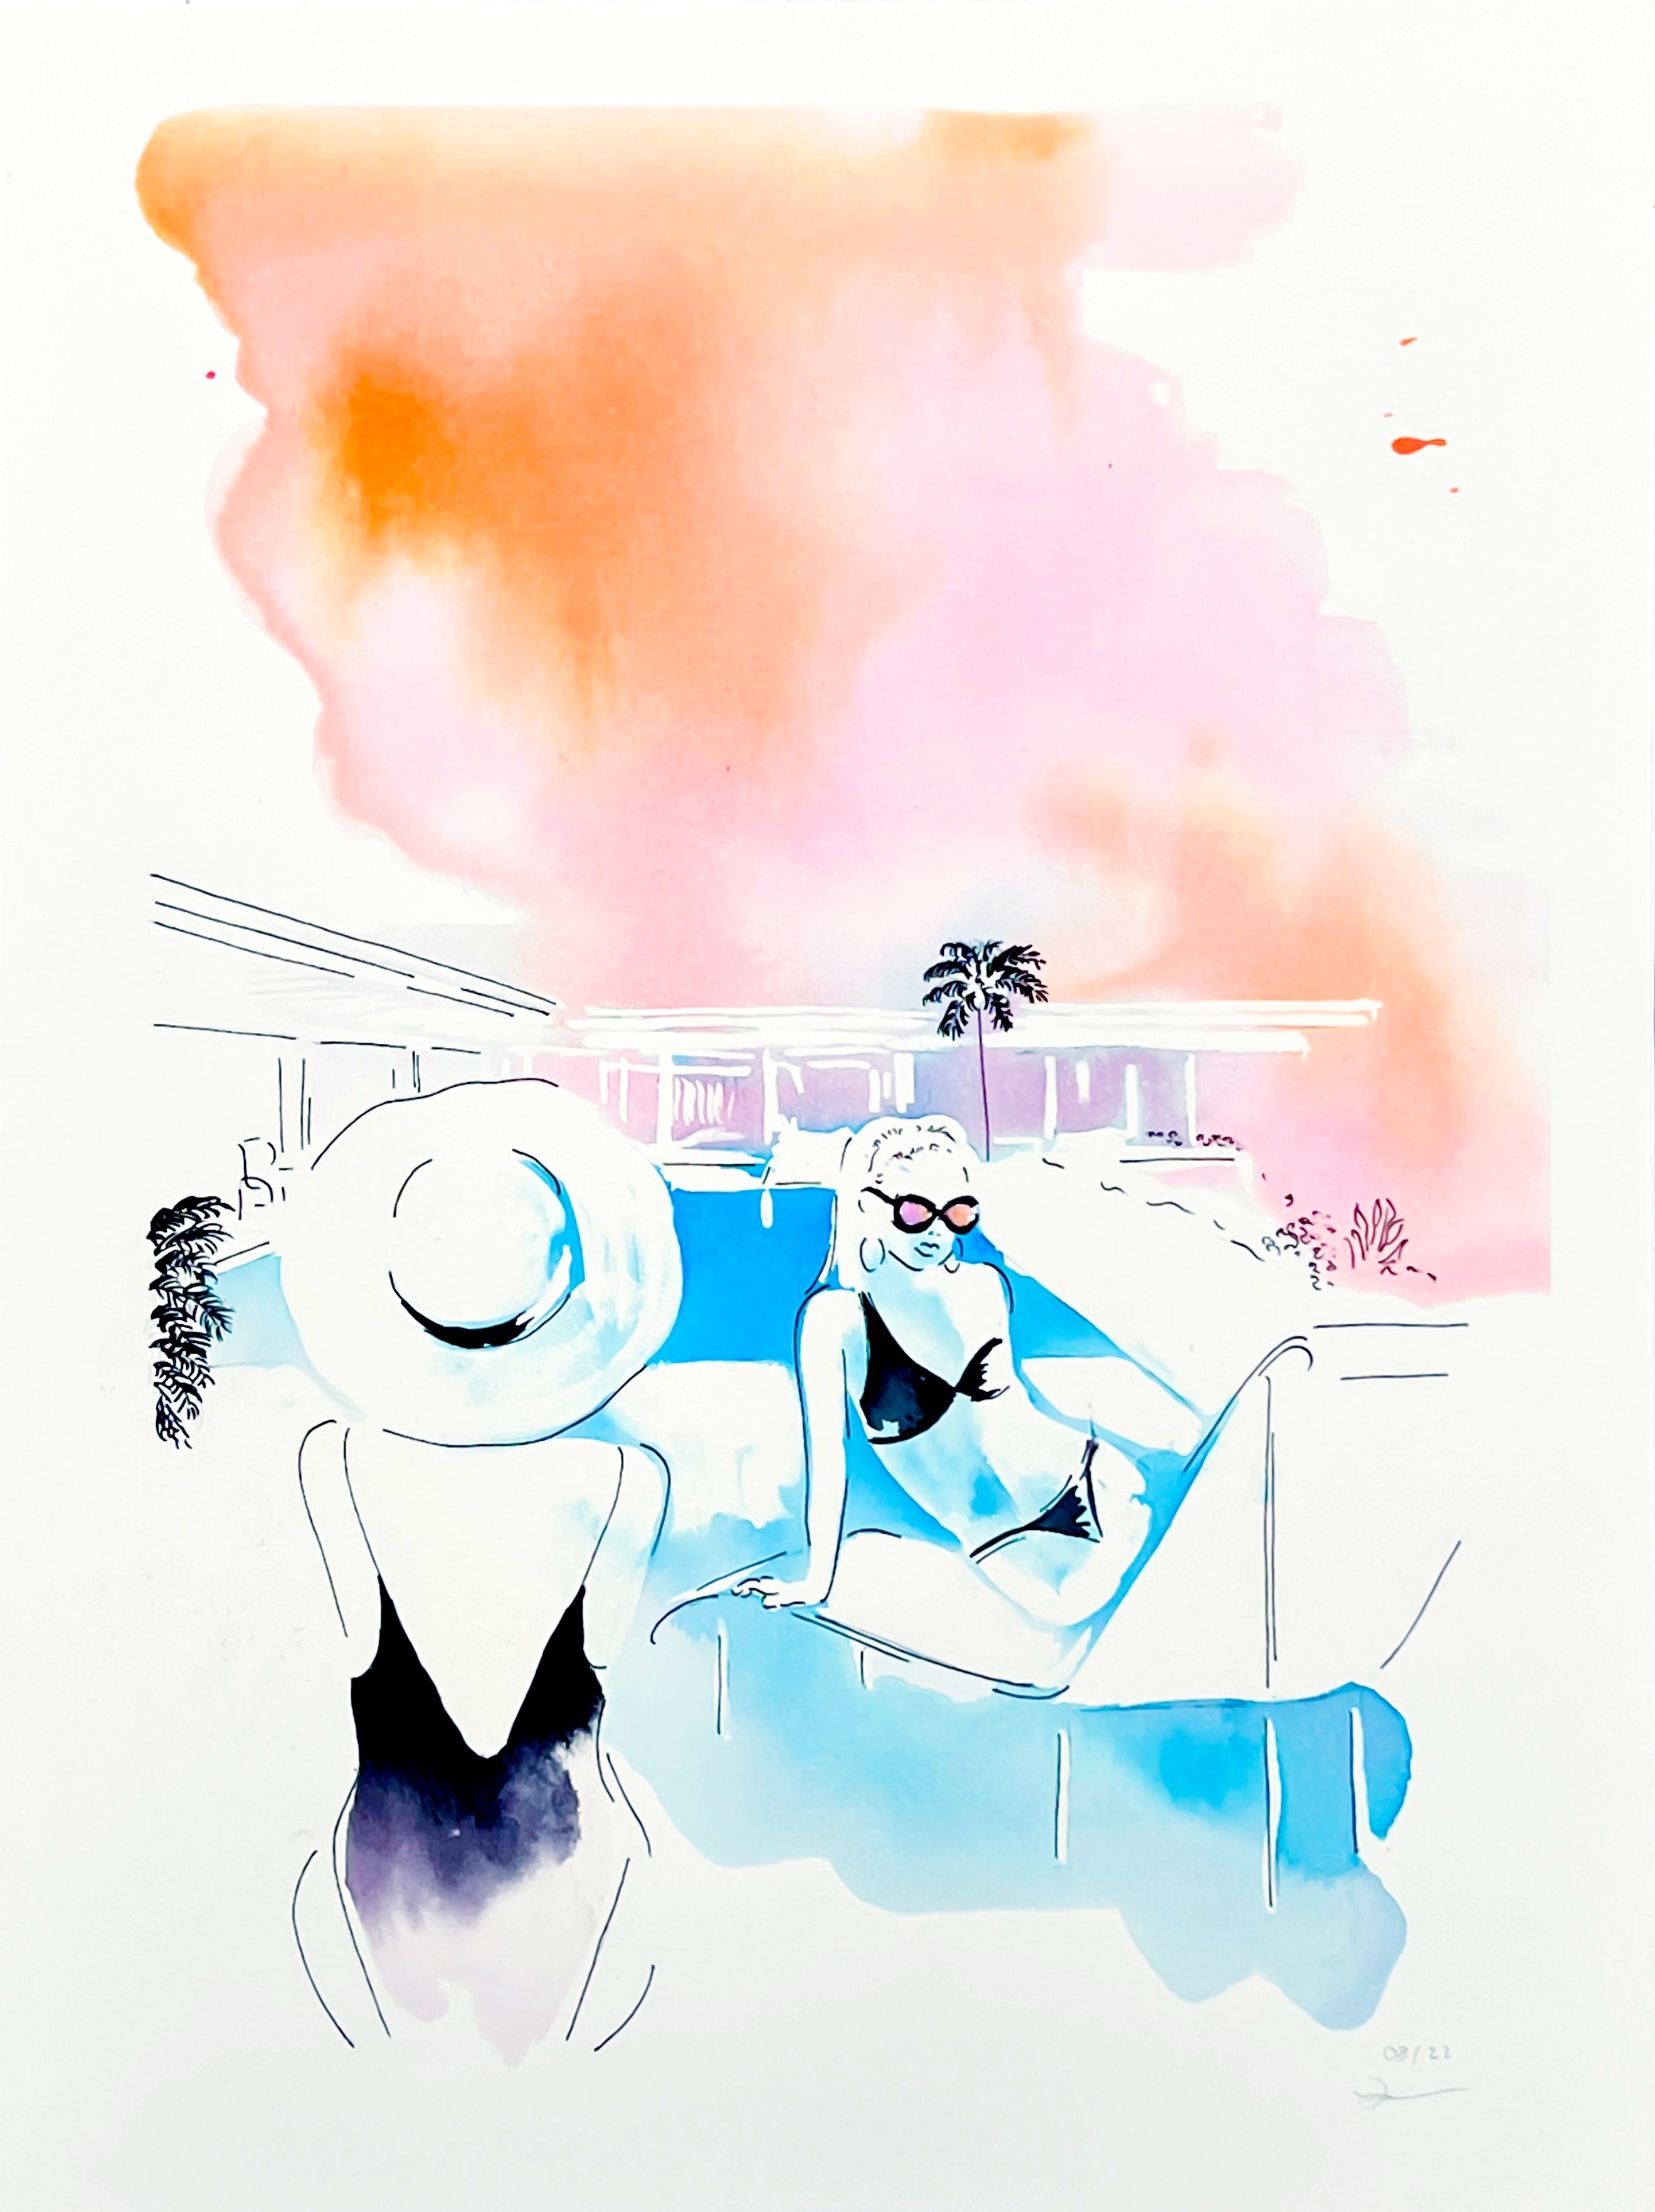 Retrouvez toutes les oeuvres de l'illustratrice Vicki Louise Ward chez Acid Gallery, galerie d'art contemporain dans le Vieux-Lille | Los Angeles collection Aquarelle 30X40 cm